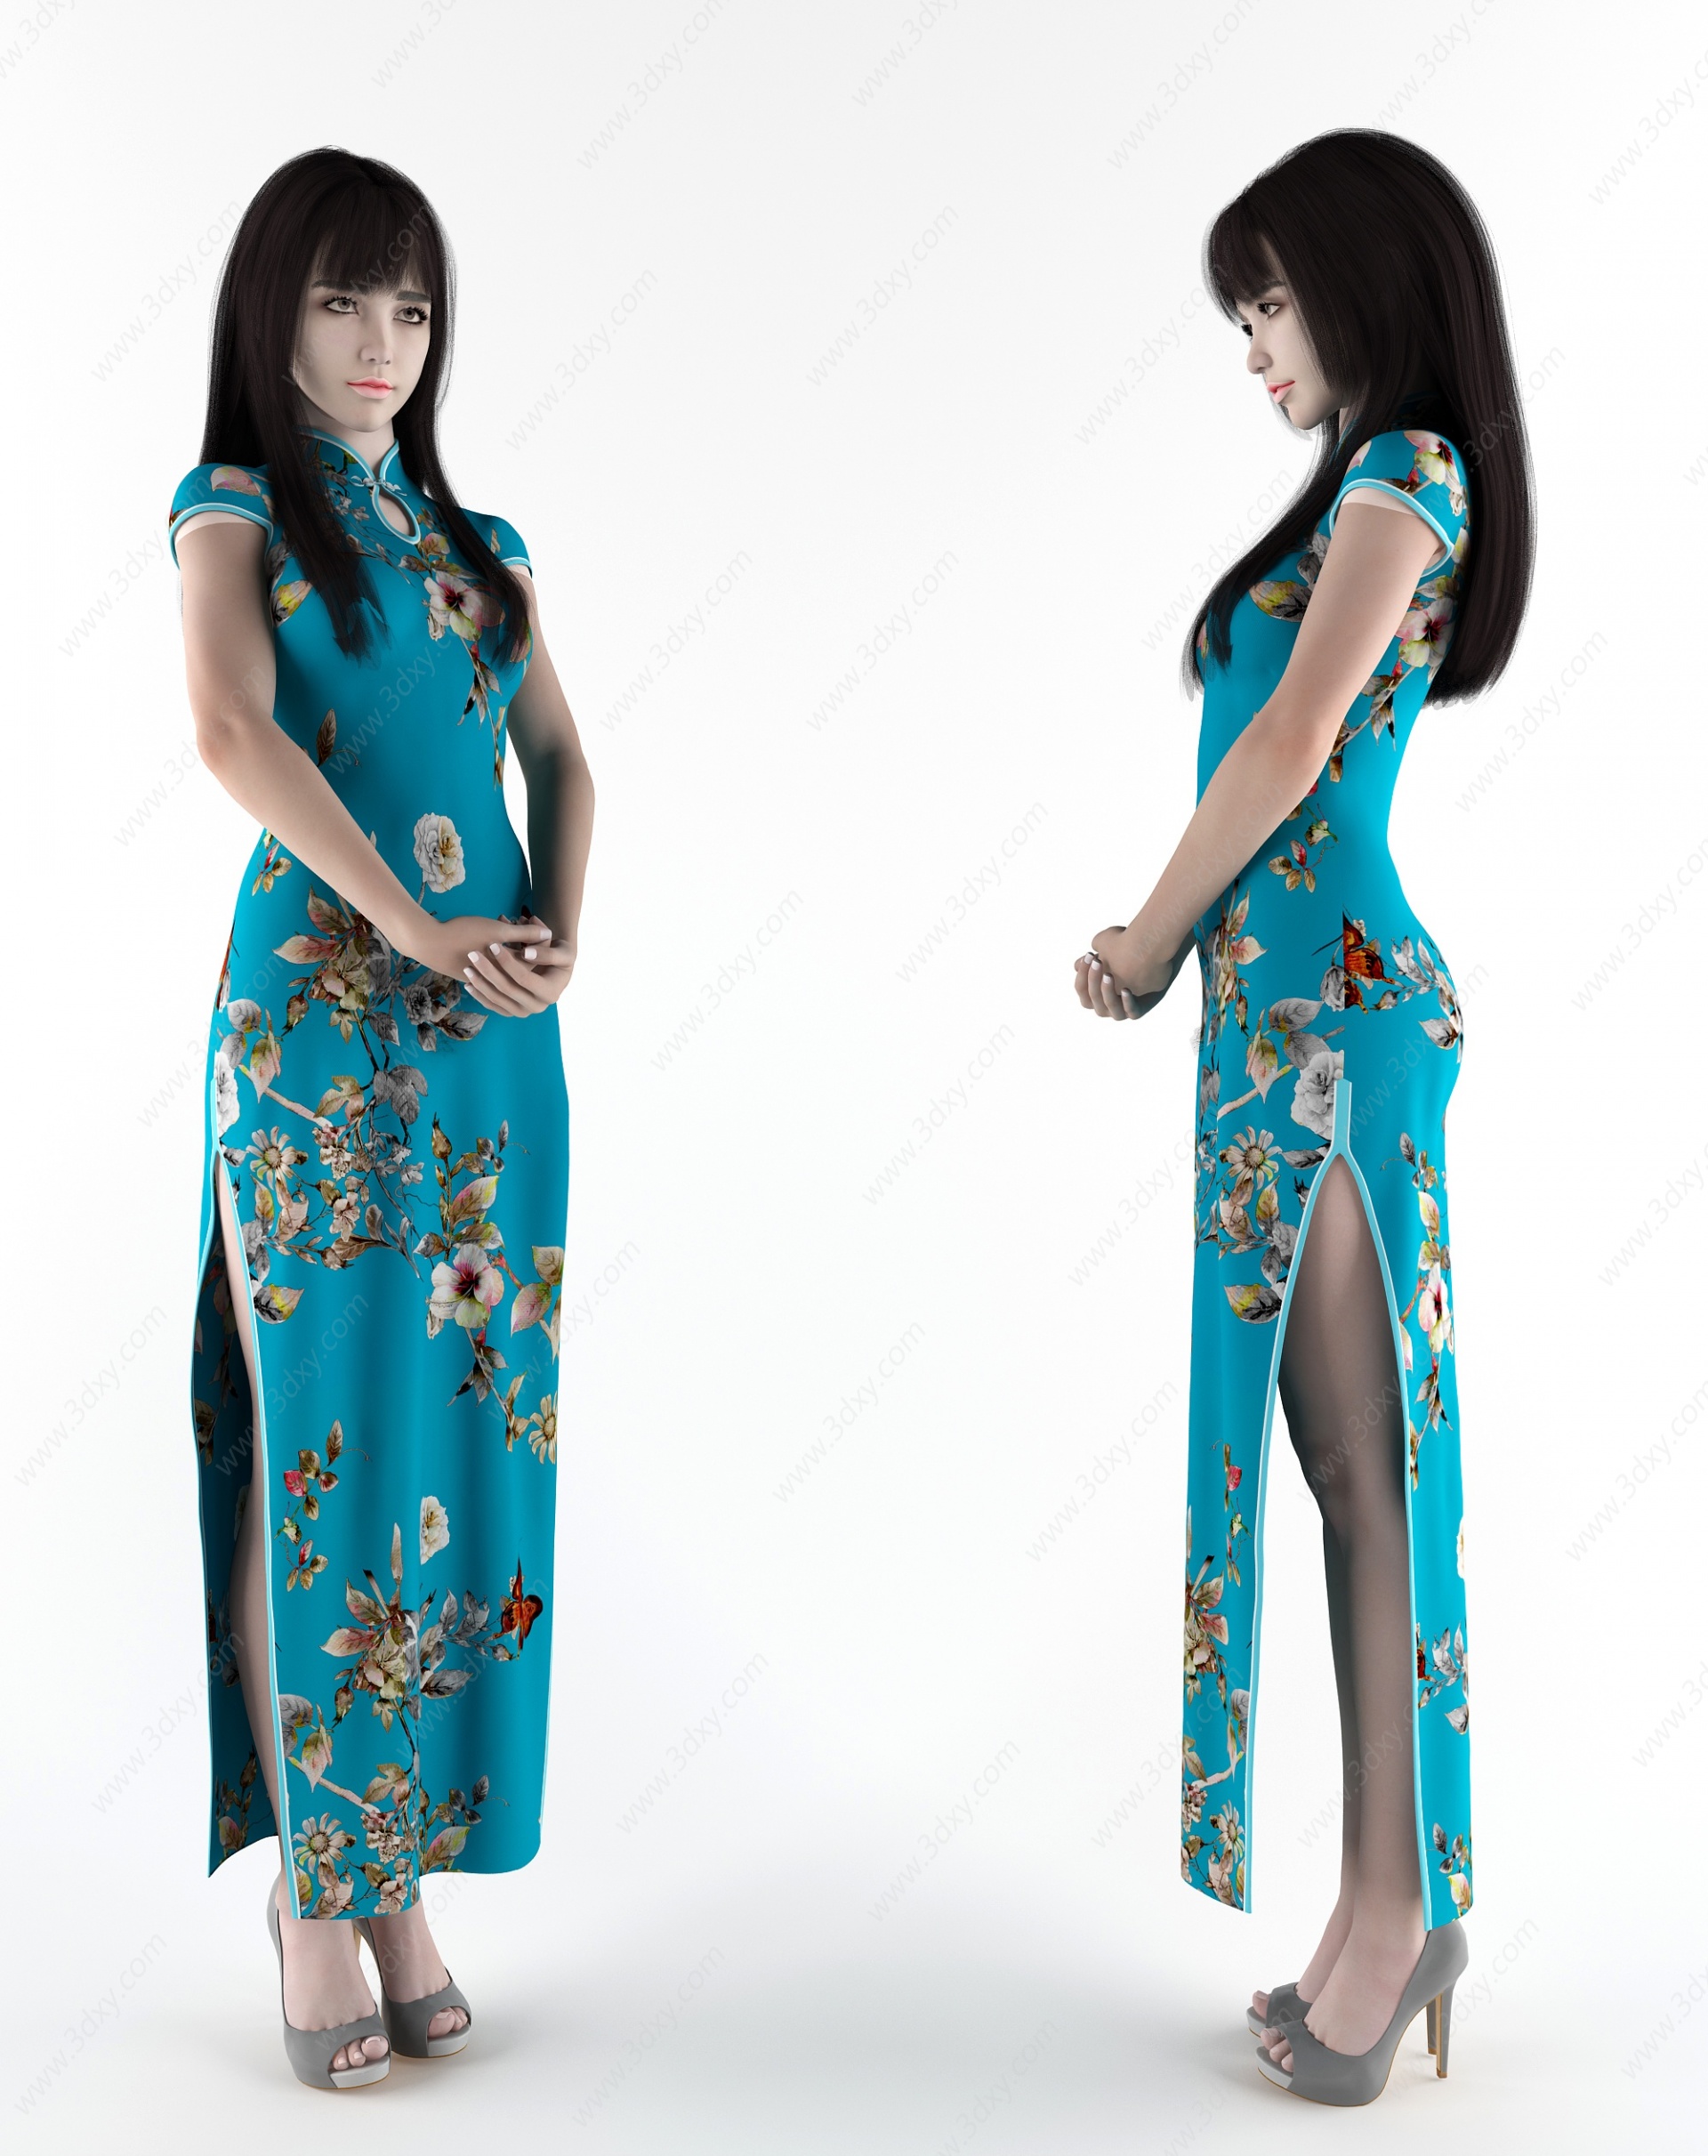 旗袍女装服装模特人物模特3D模型